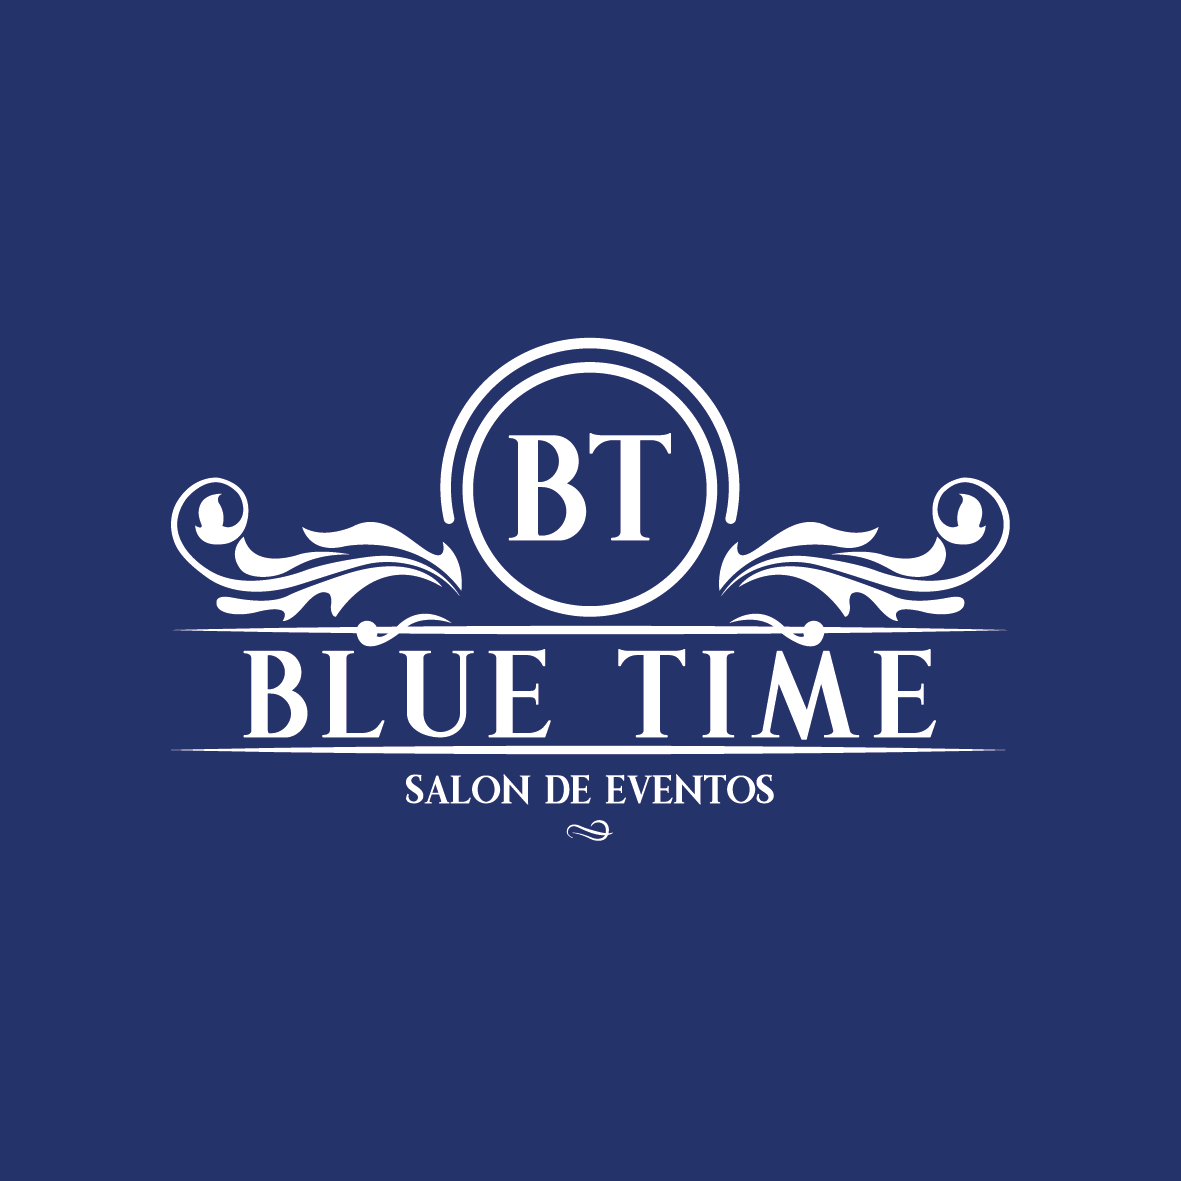 Blue Time Salon de eventos